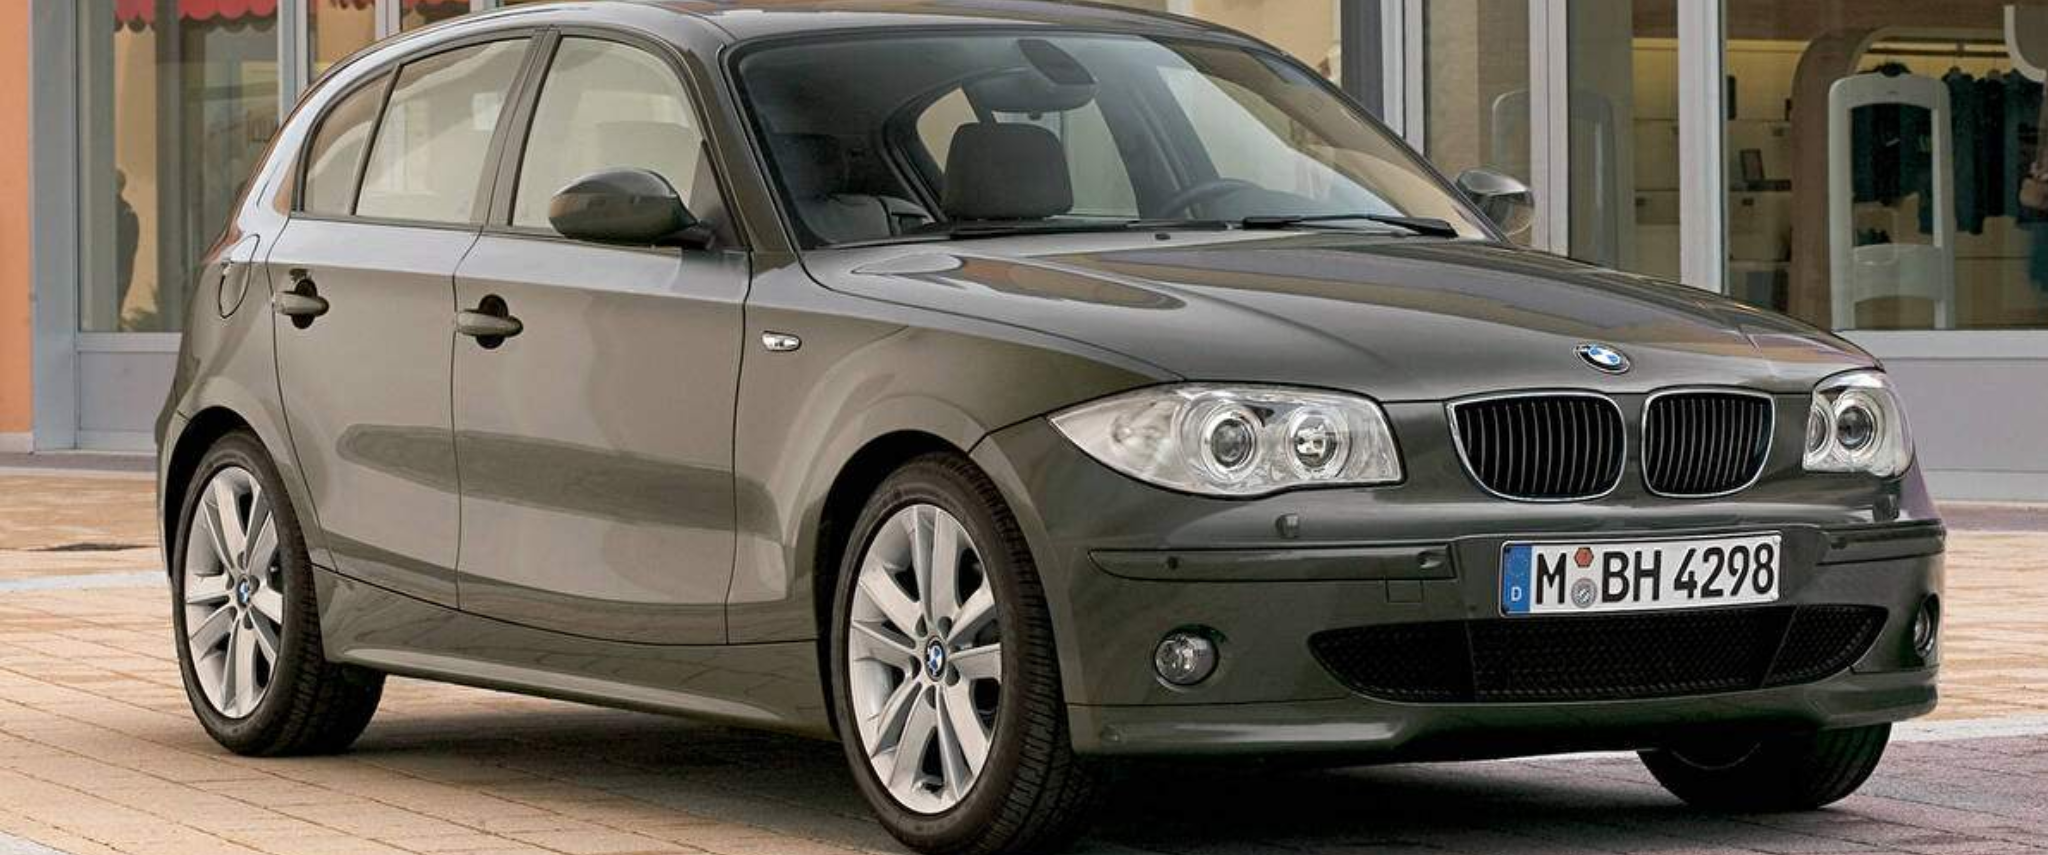 BMW Série 1 120d (2004-2007)